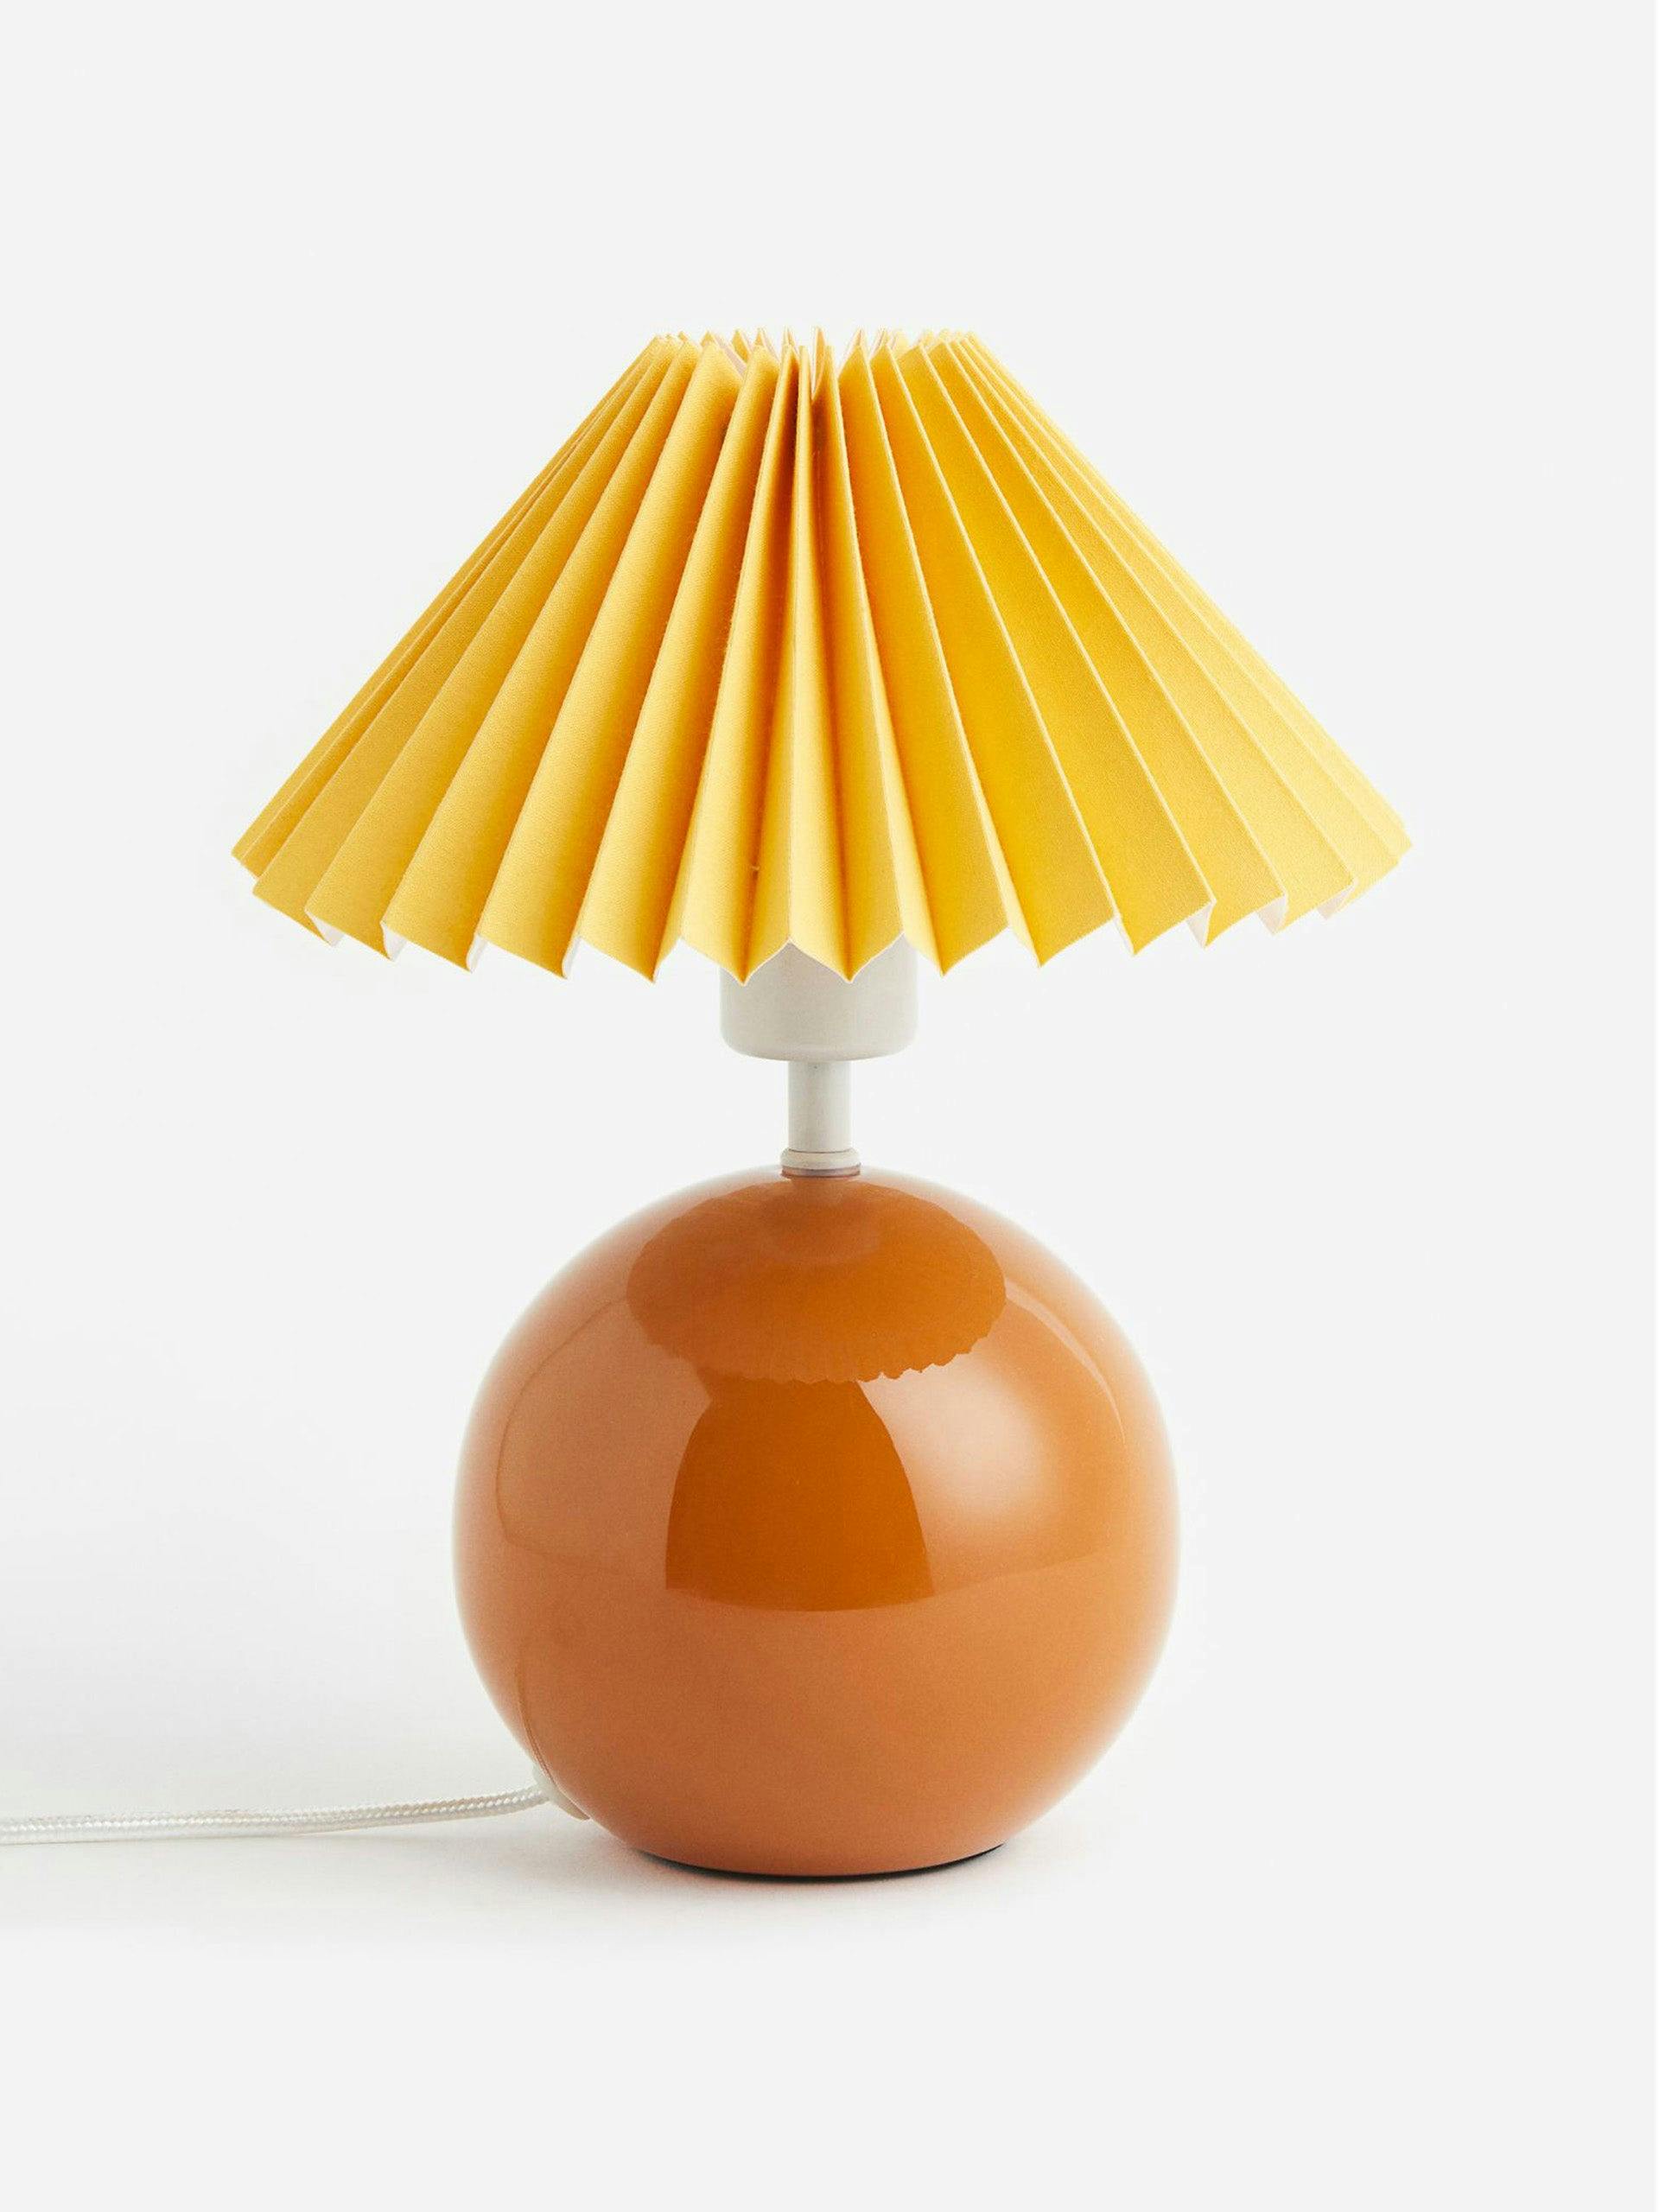 Orange orb-shaped lamp base